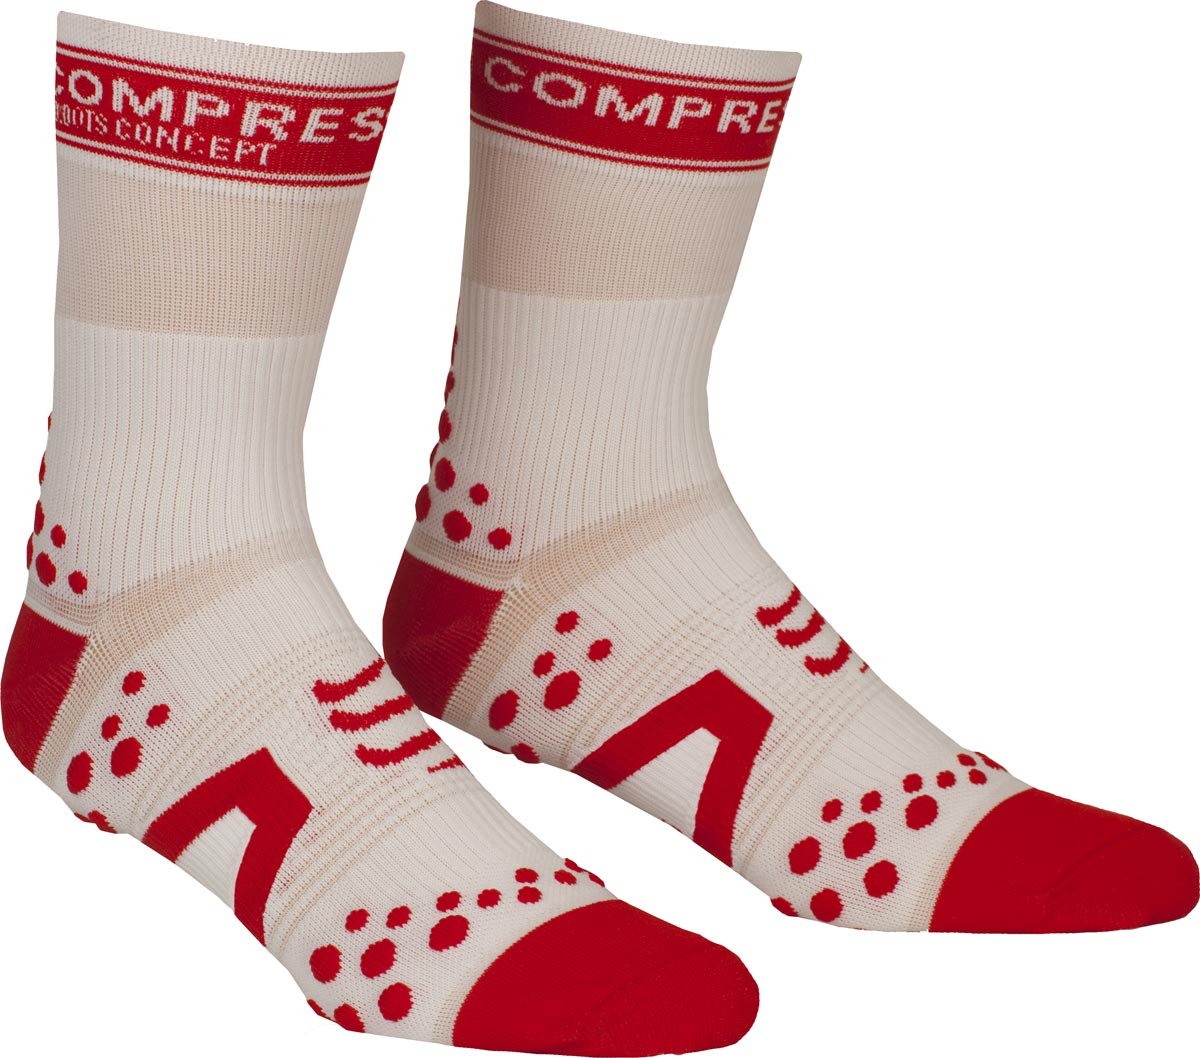 BIKE HI - Compression socks